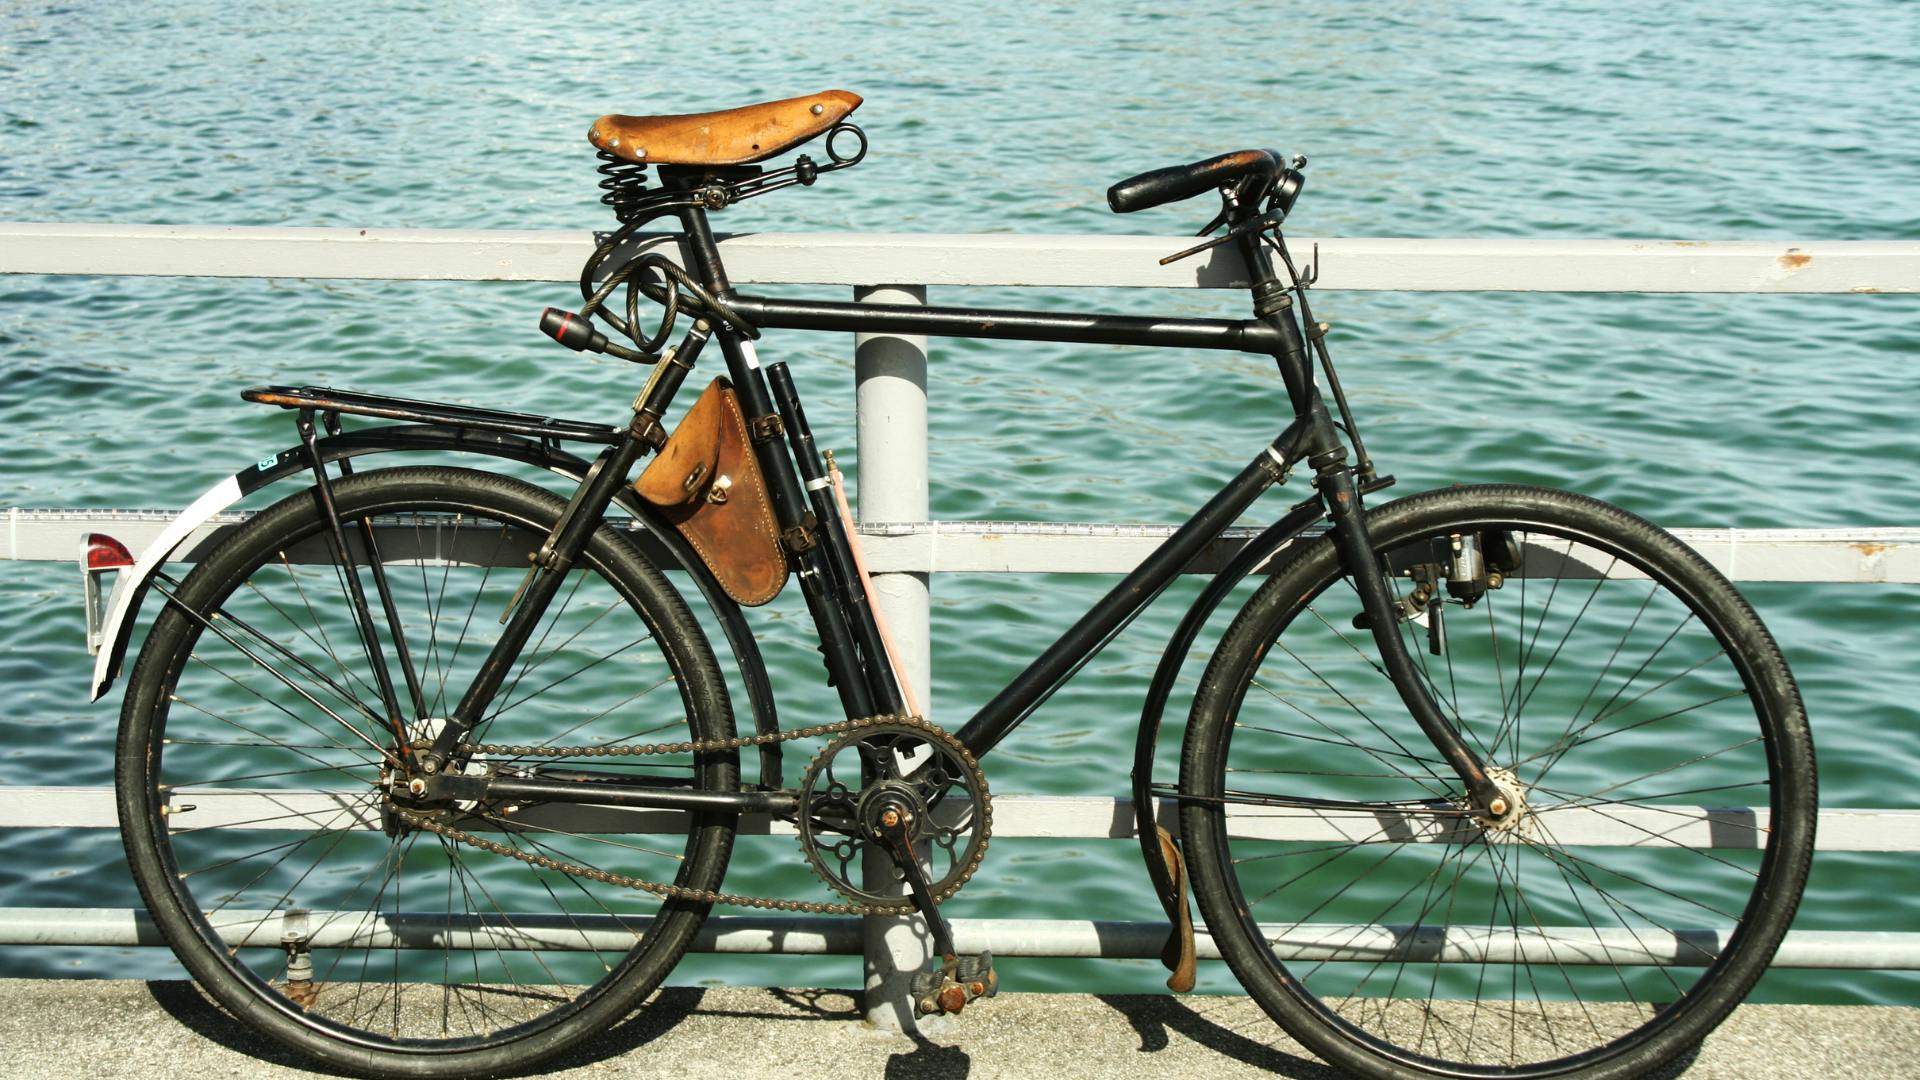 Sonhar com Bicicleta Preta: Qual é o Significado?